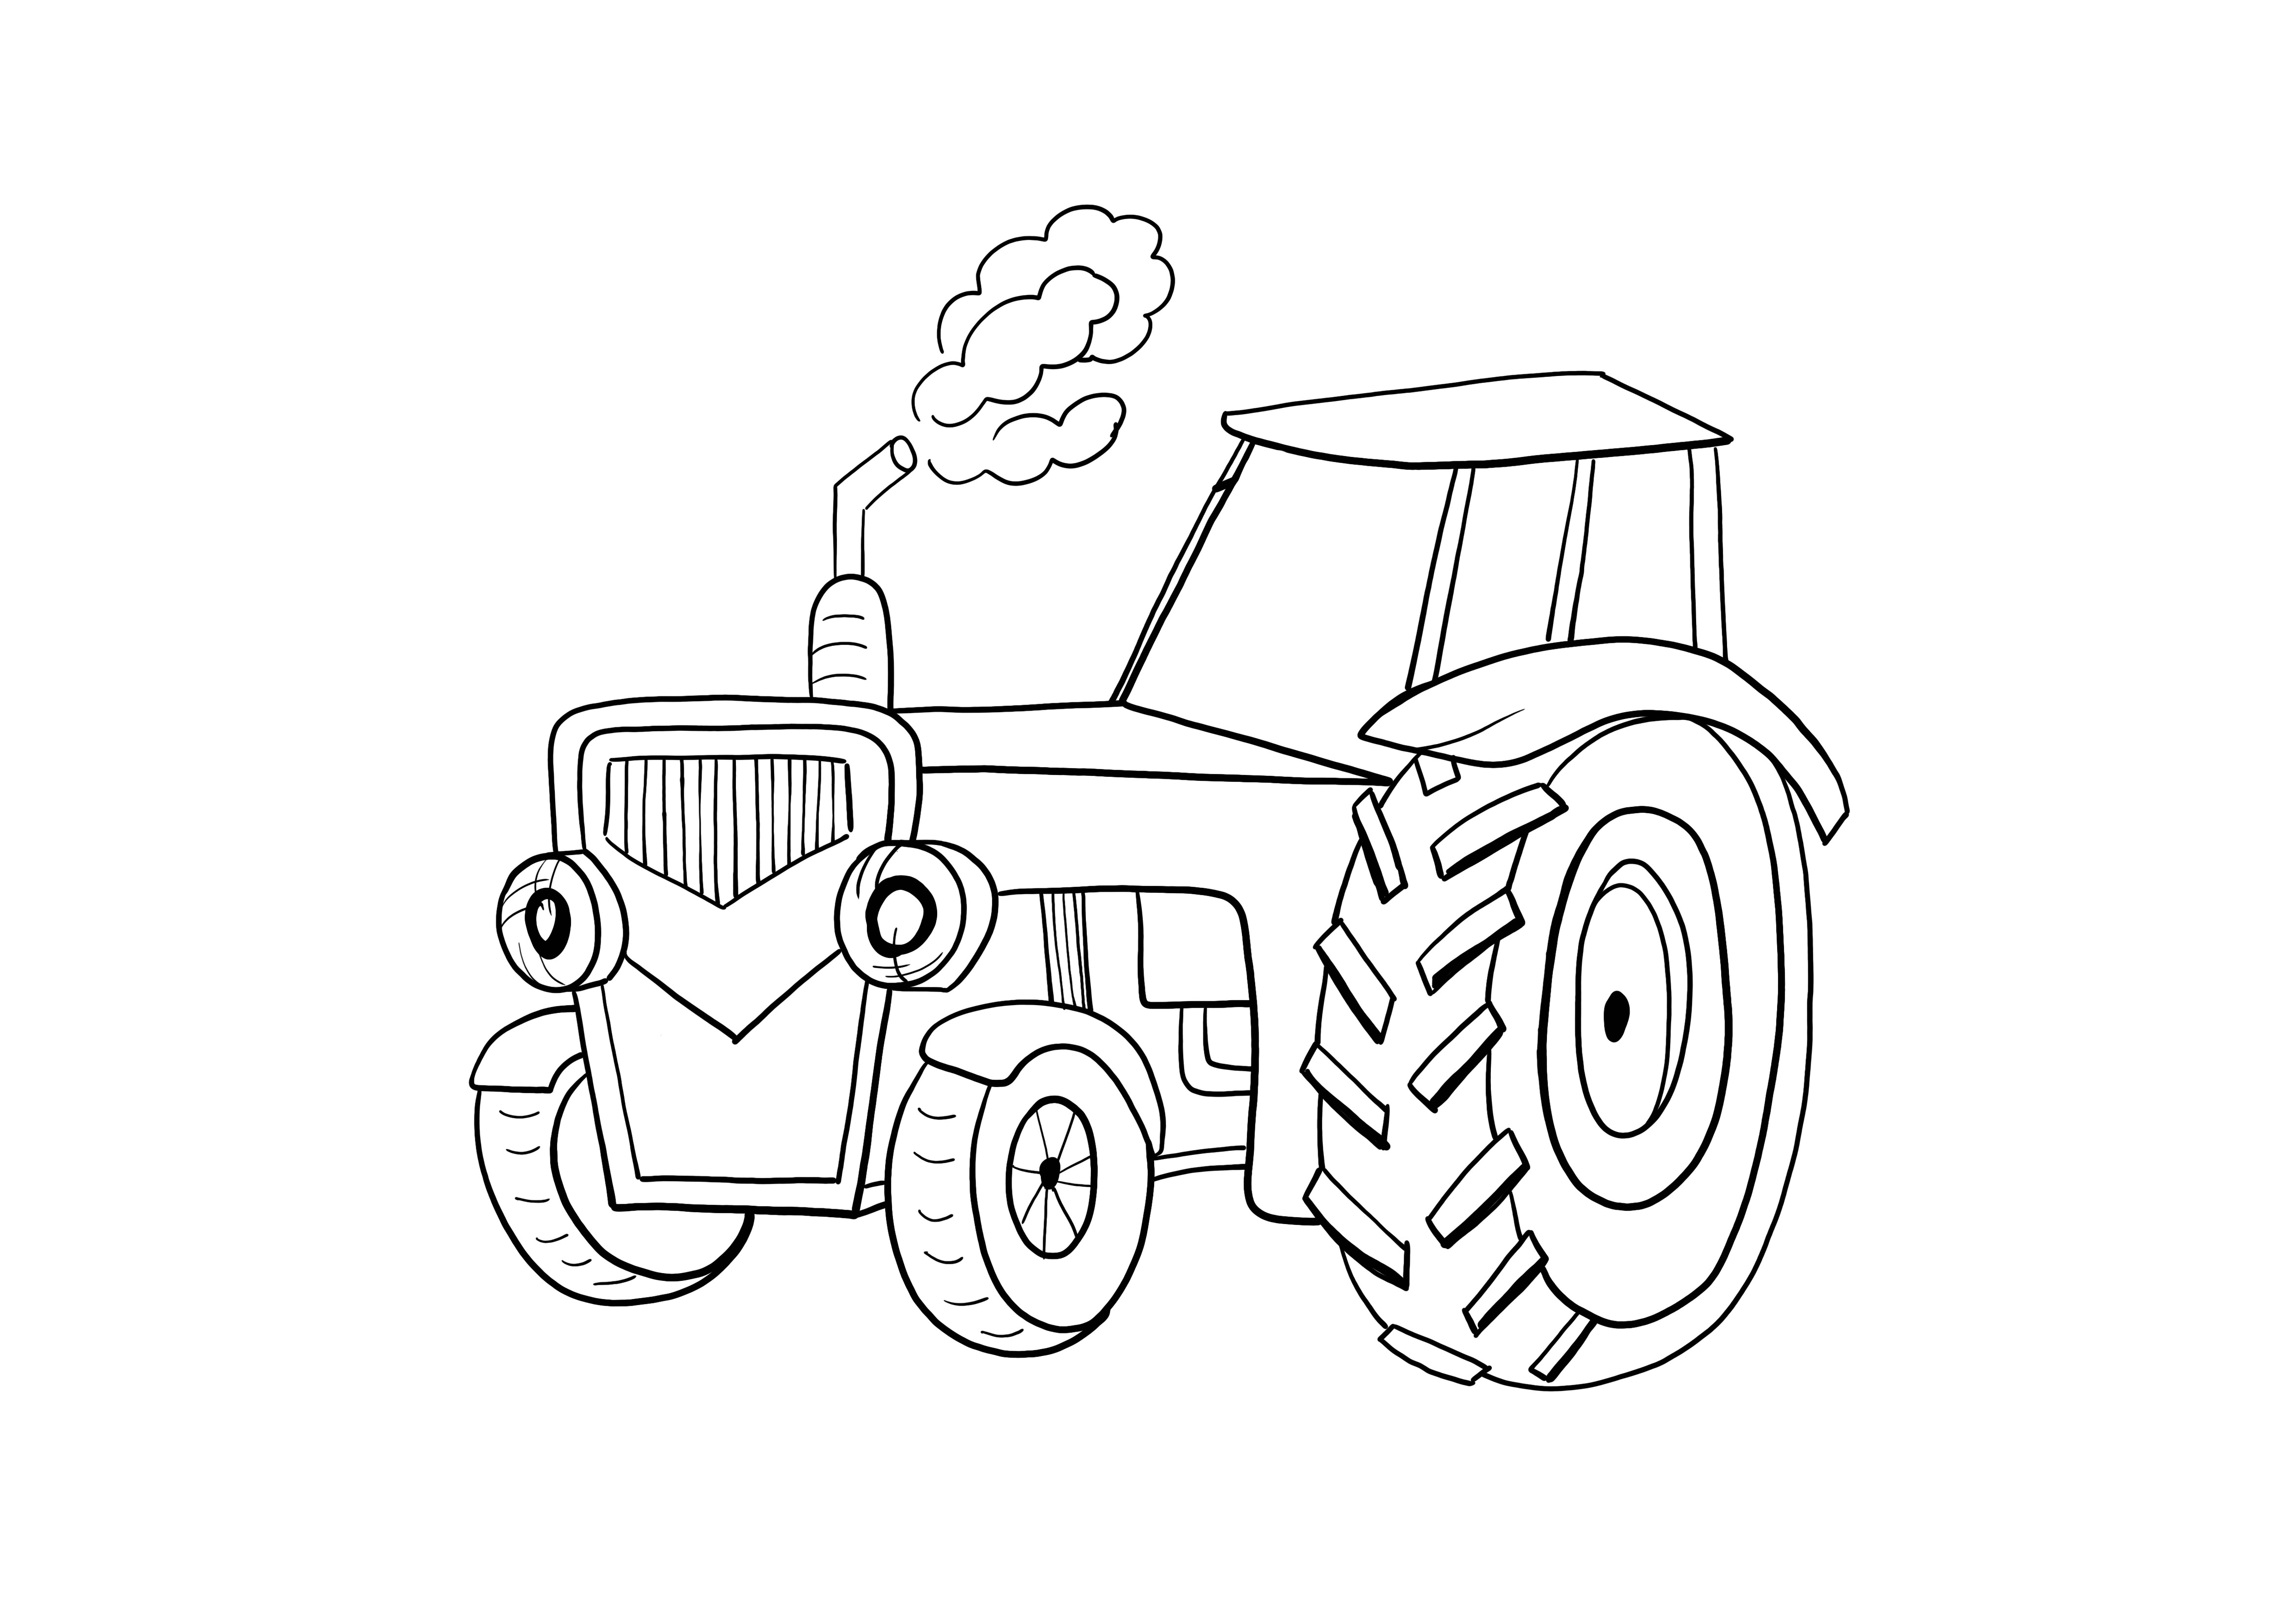 Coloriage et impression gratuits de tracteur drôle